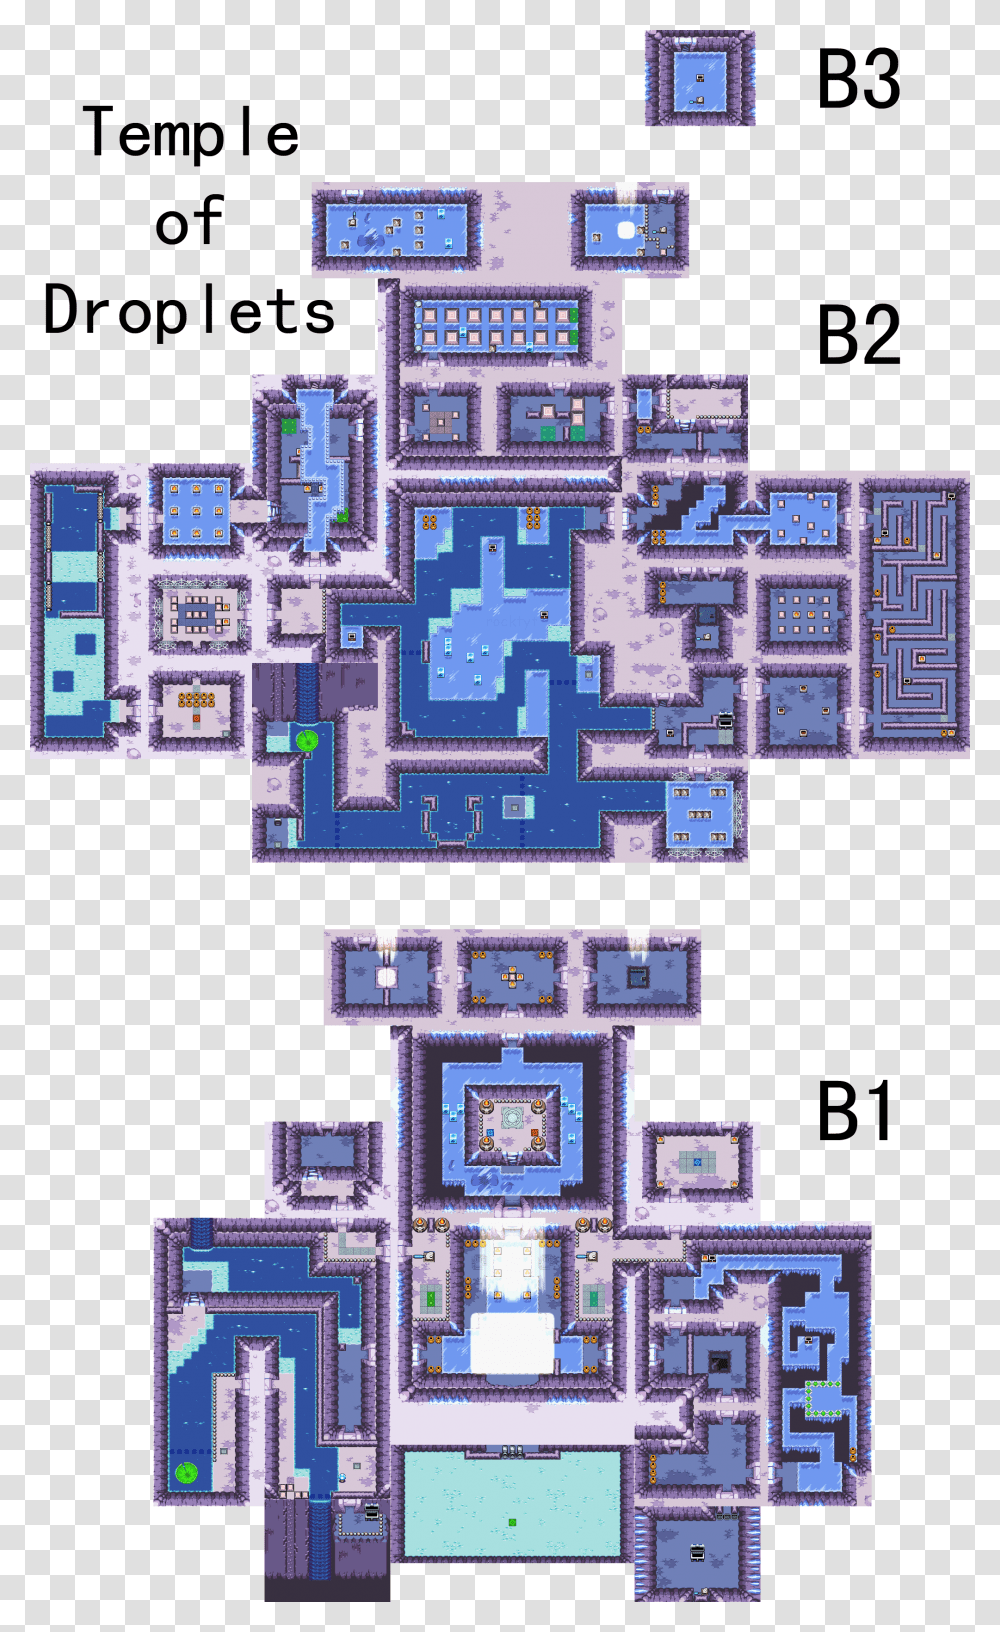 Temple Images, Plan, Plot, Diagram, Floor Plan Transparent Png